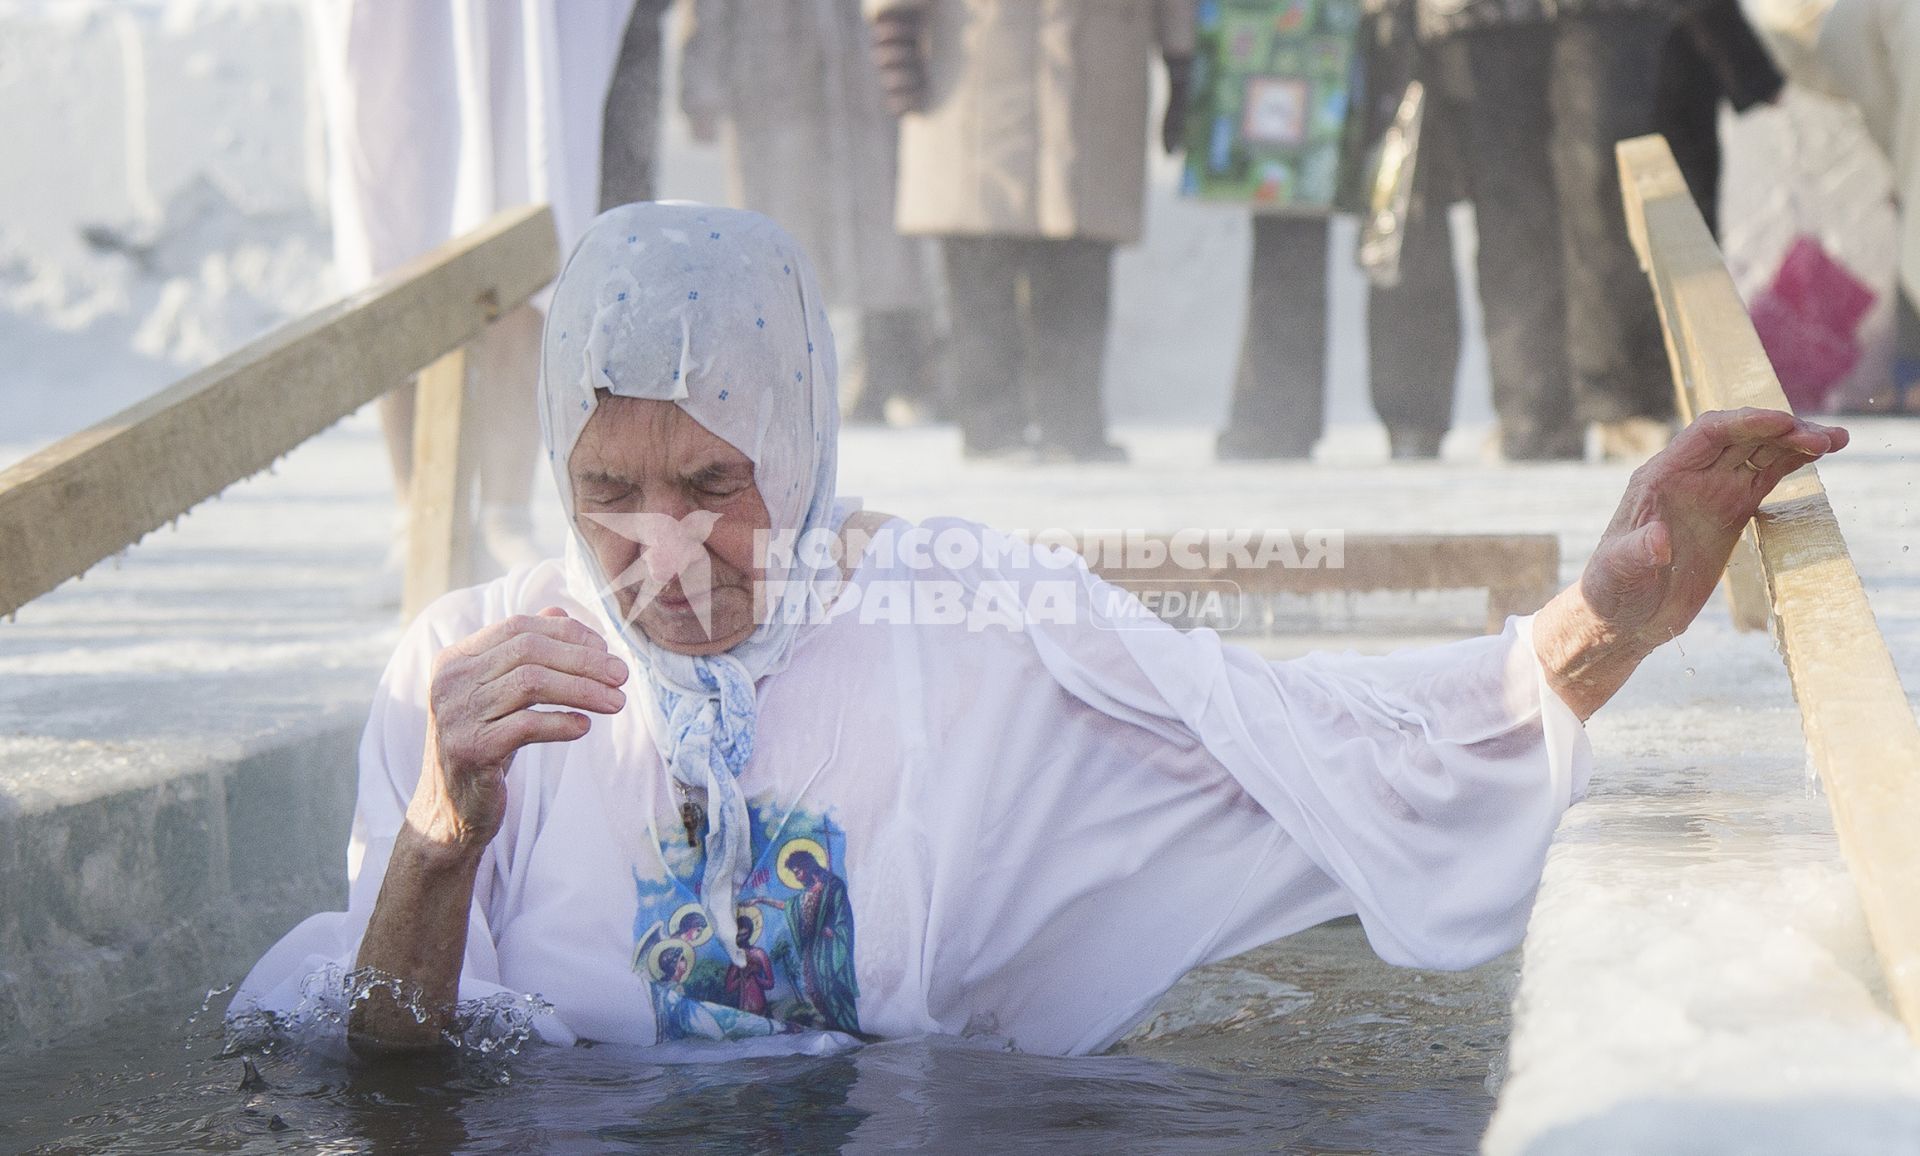 Крещенские купания в Иркутске. На снимке: женщина окунается в проруби.